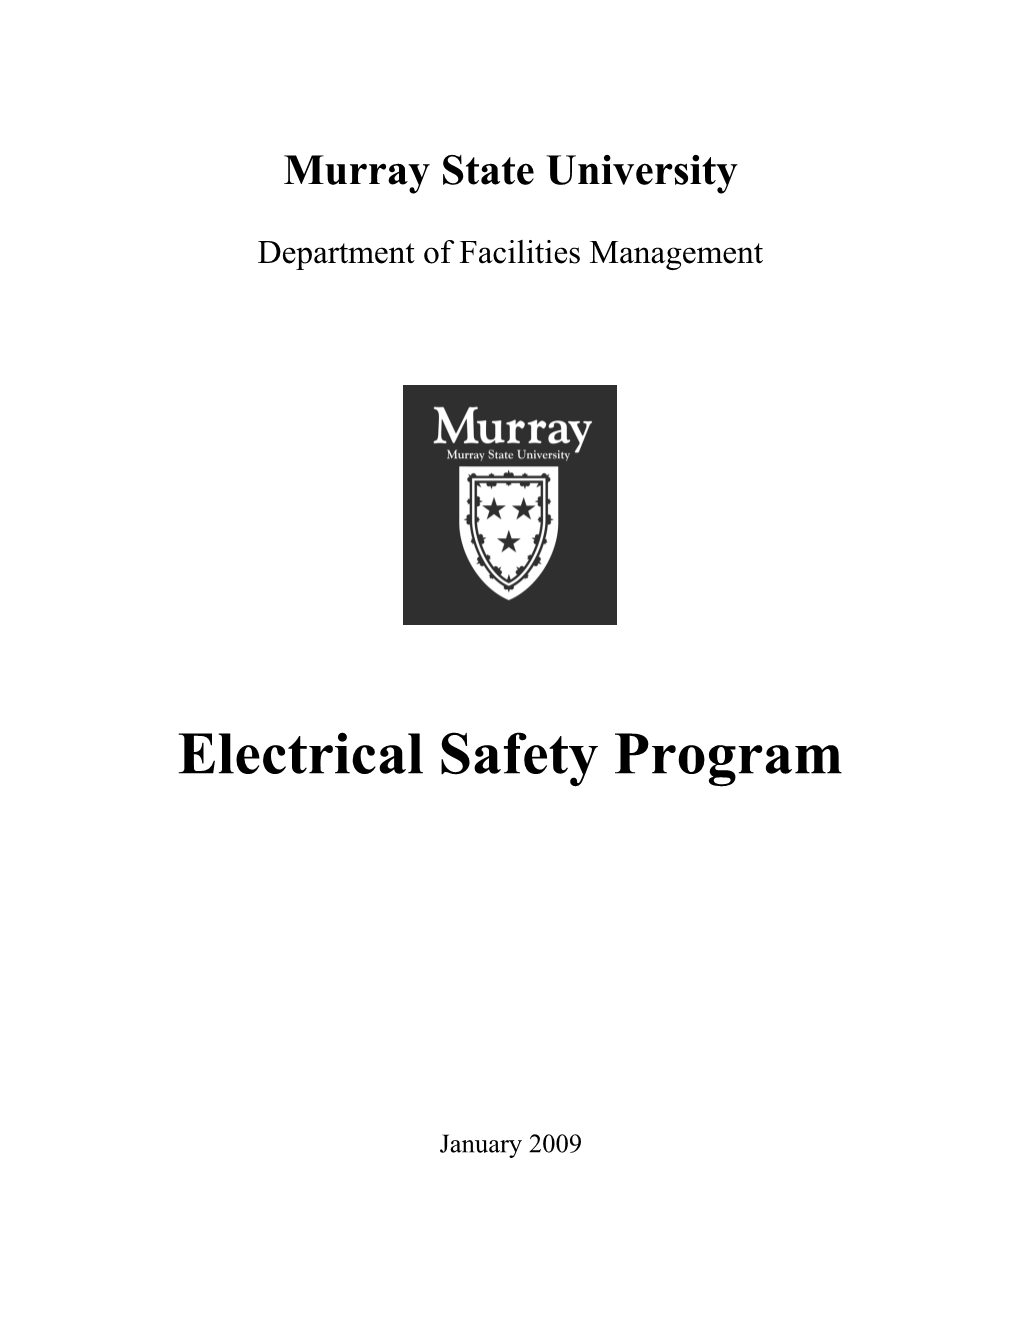 Murray State University s17